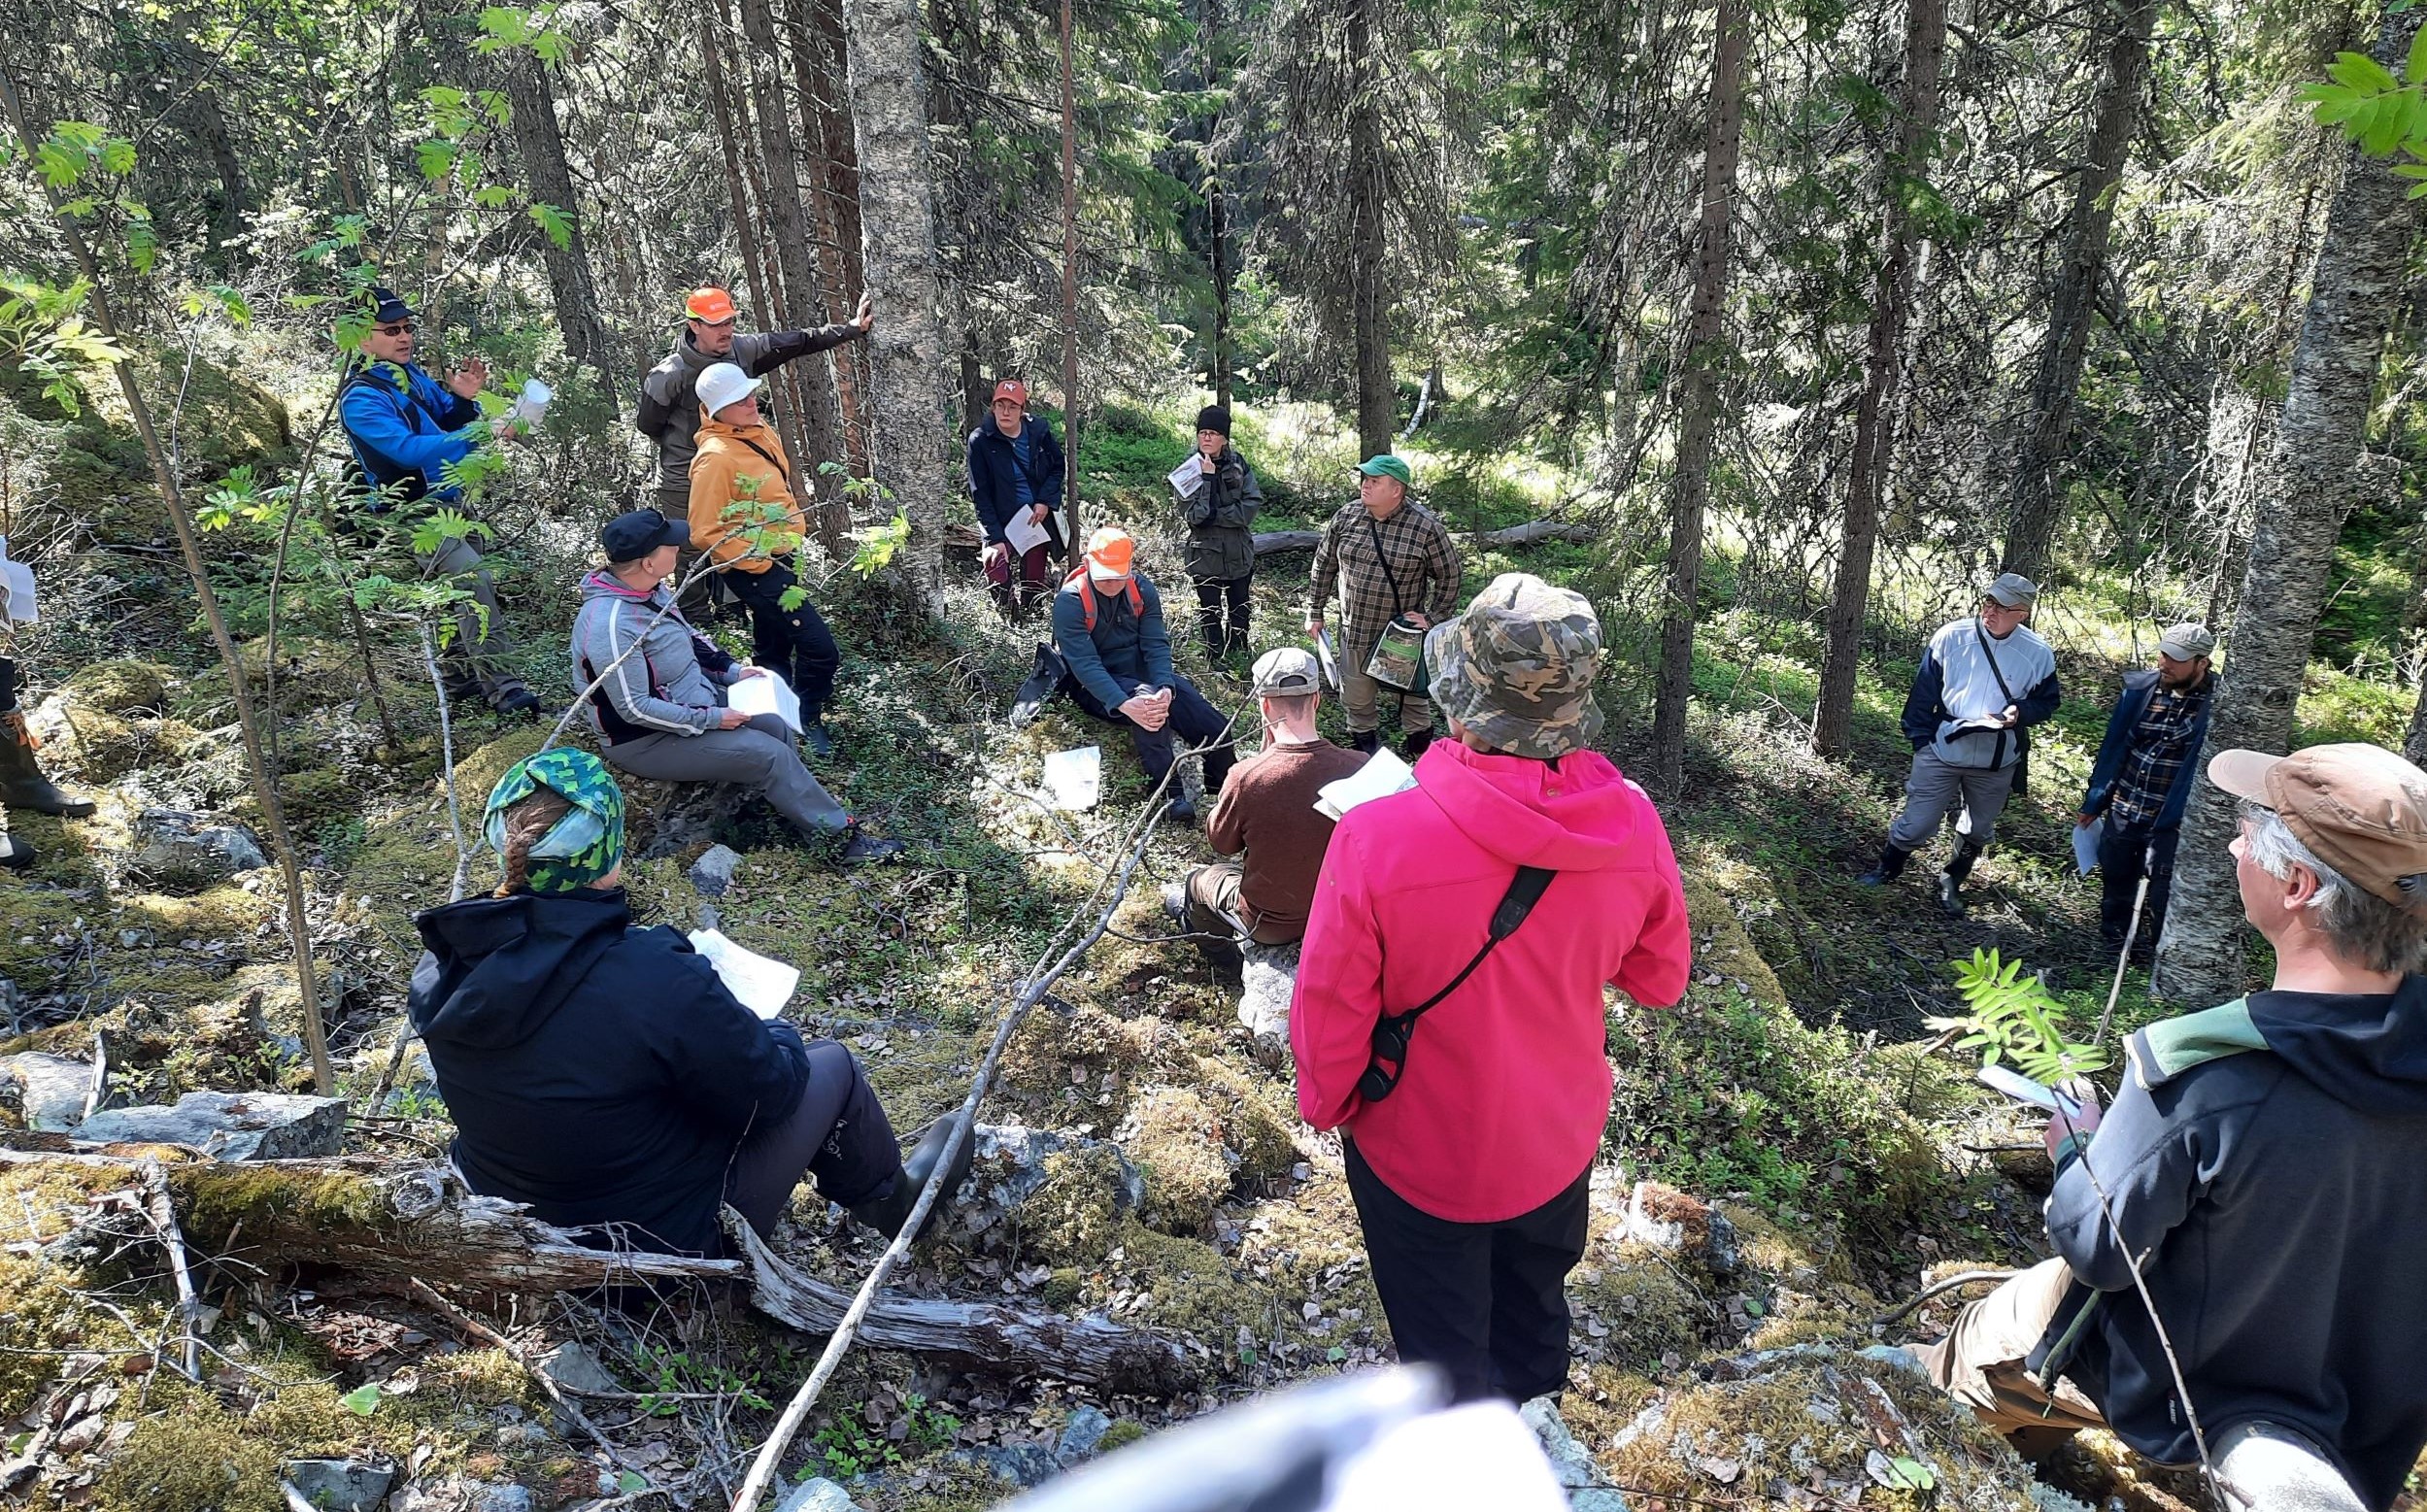 Ihmisiä keskustelemassa seisten ja istuen jyrkässä metsäisessä ja kivikkoisessa kalliorinteessä.